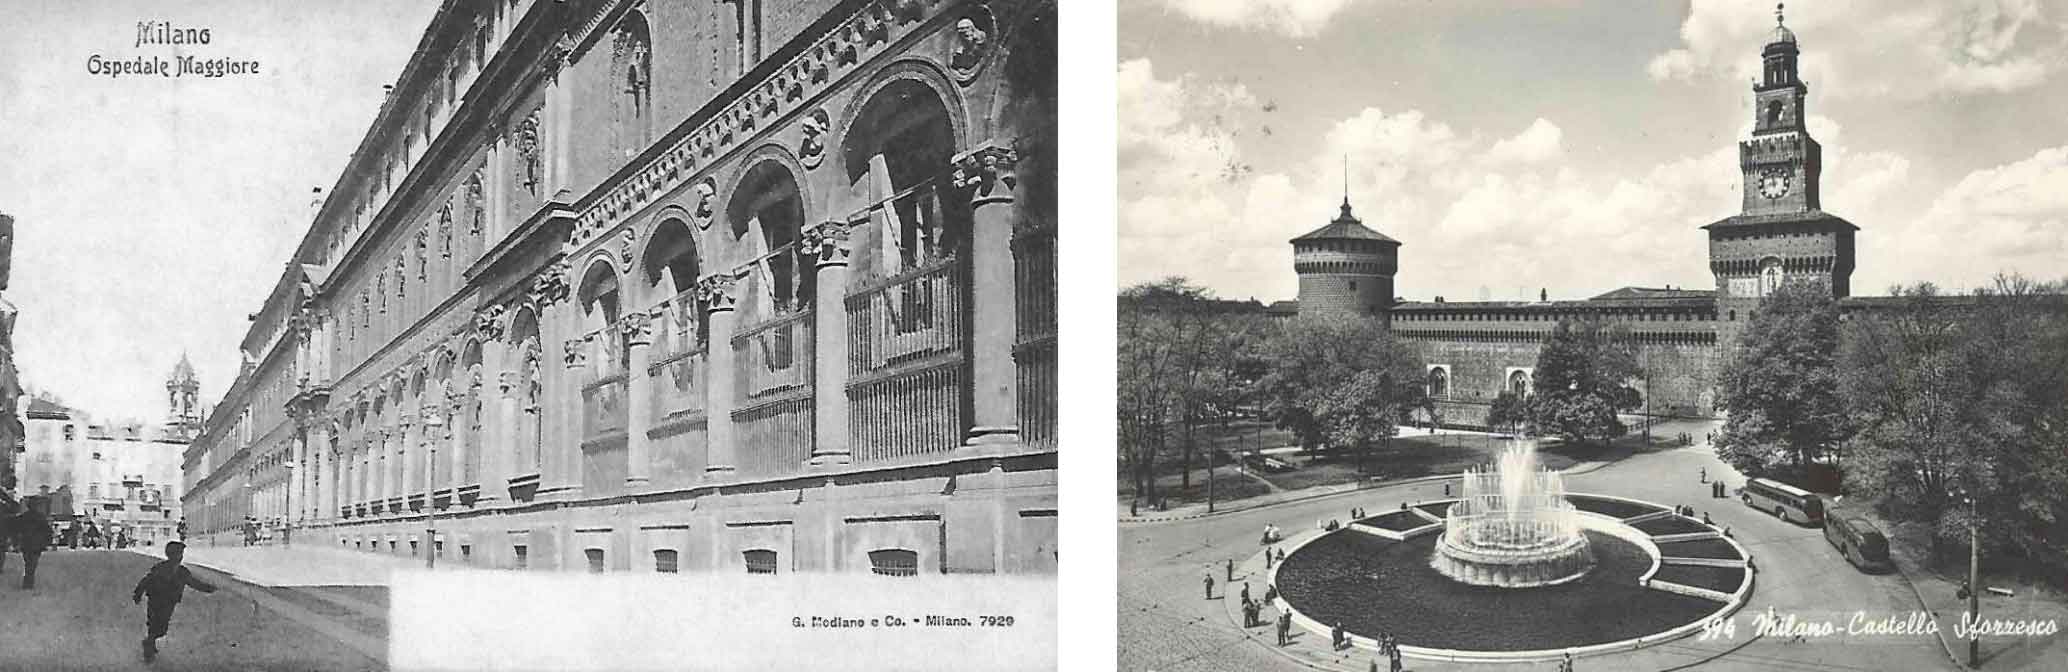 Da sinistra, una cartolina storica dell’Ospedale Maggiore; accanto il Castello Sforzesco di Milano